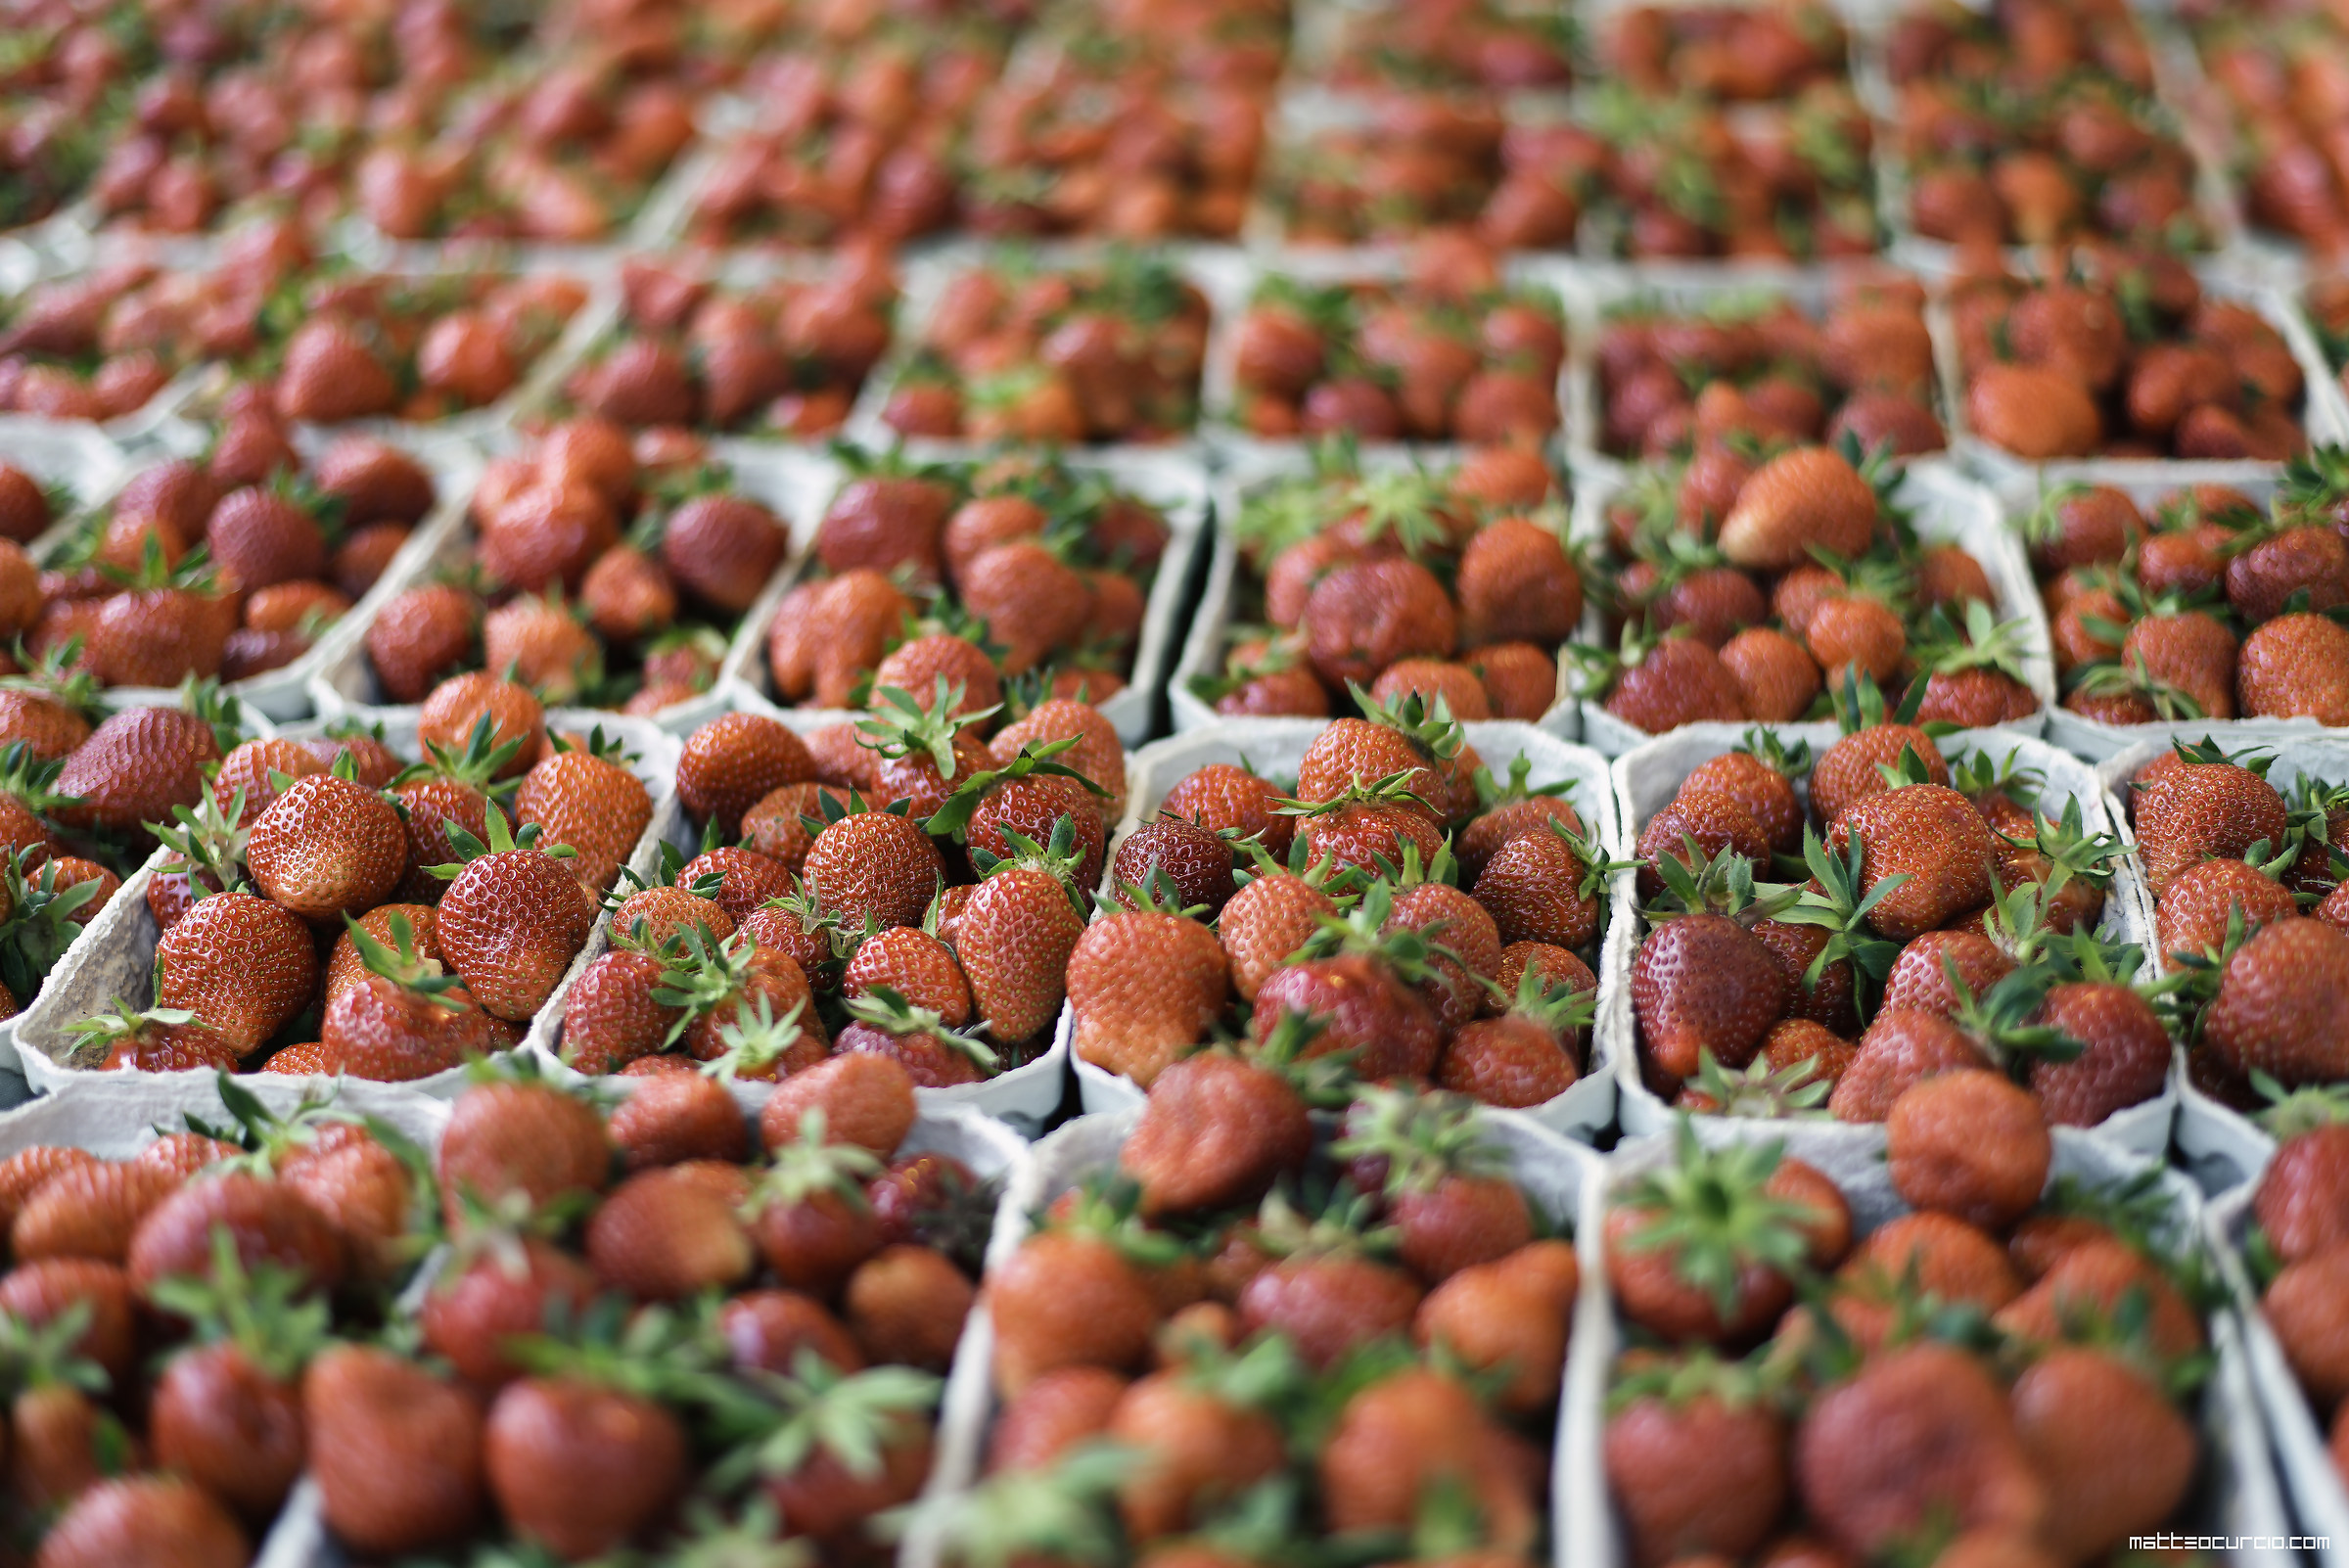 Market Strawberries...